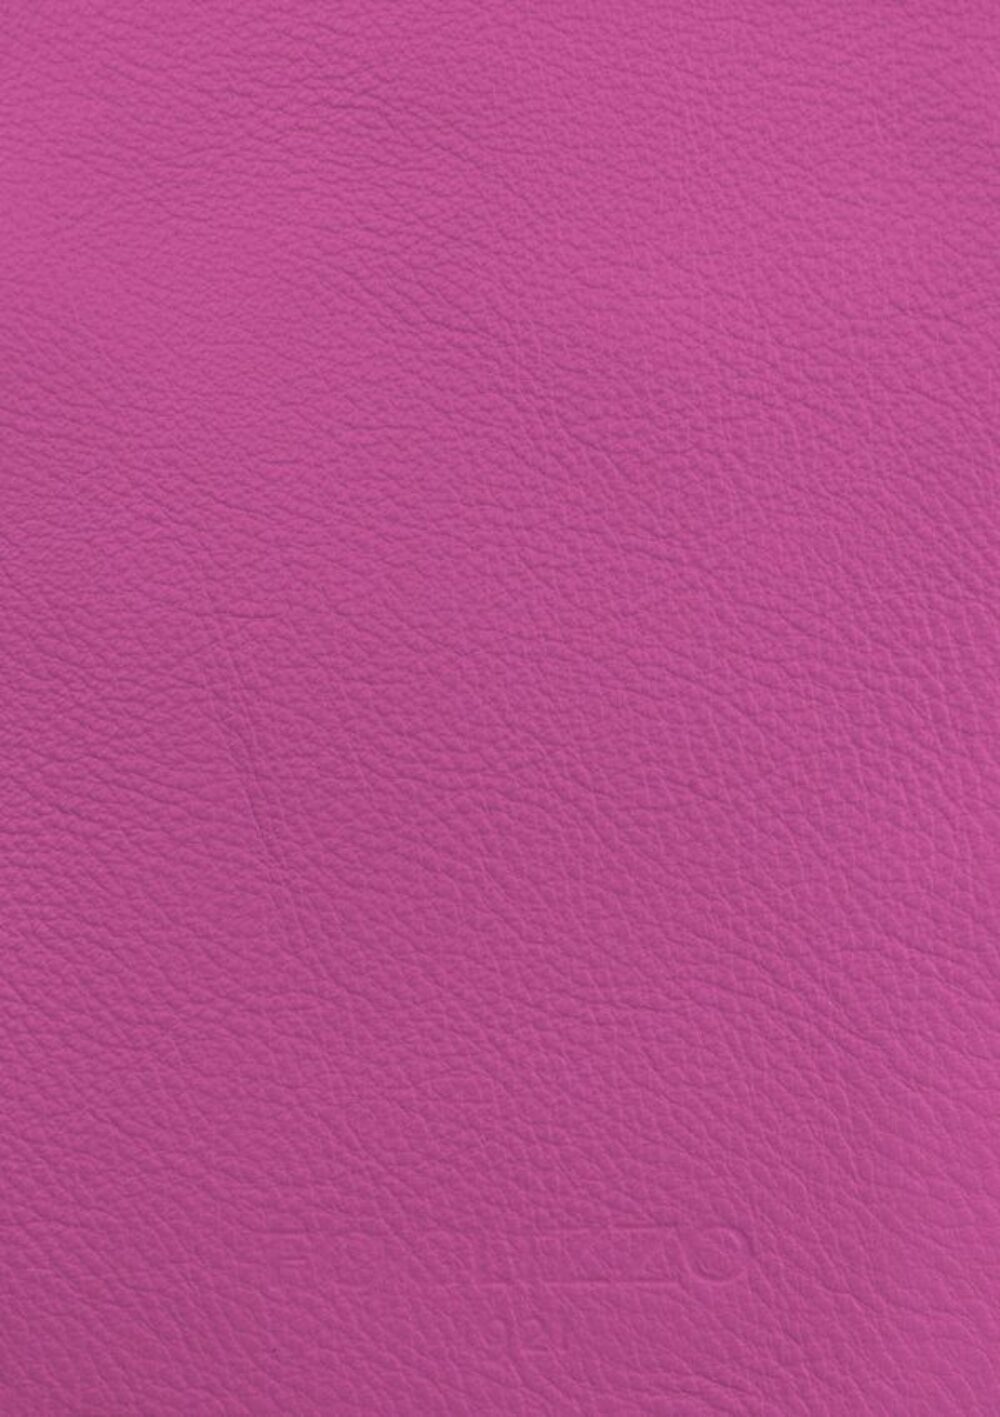 Luxusdesign und hochwertige Teppiche nach Maß • Fuscia Pink Jade